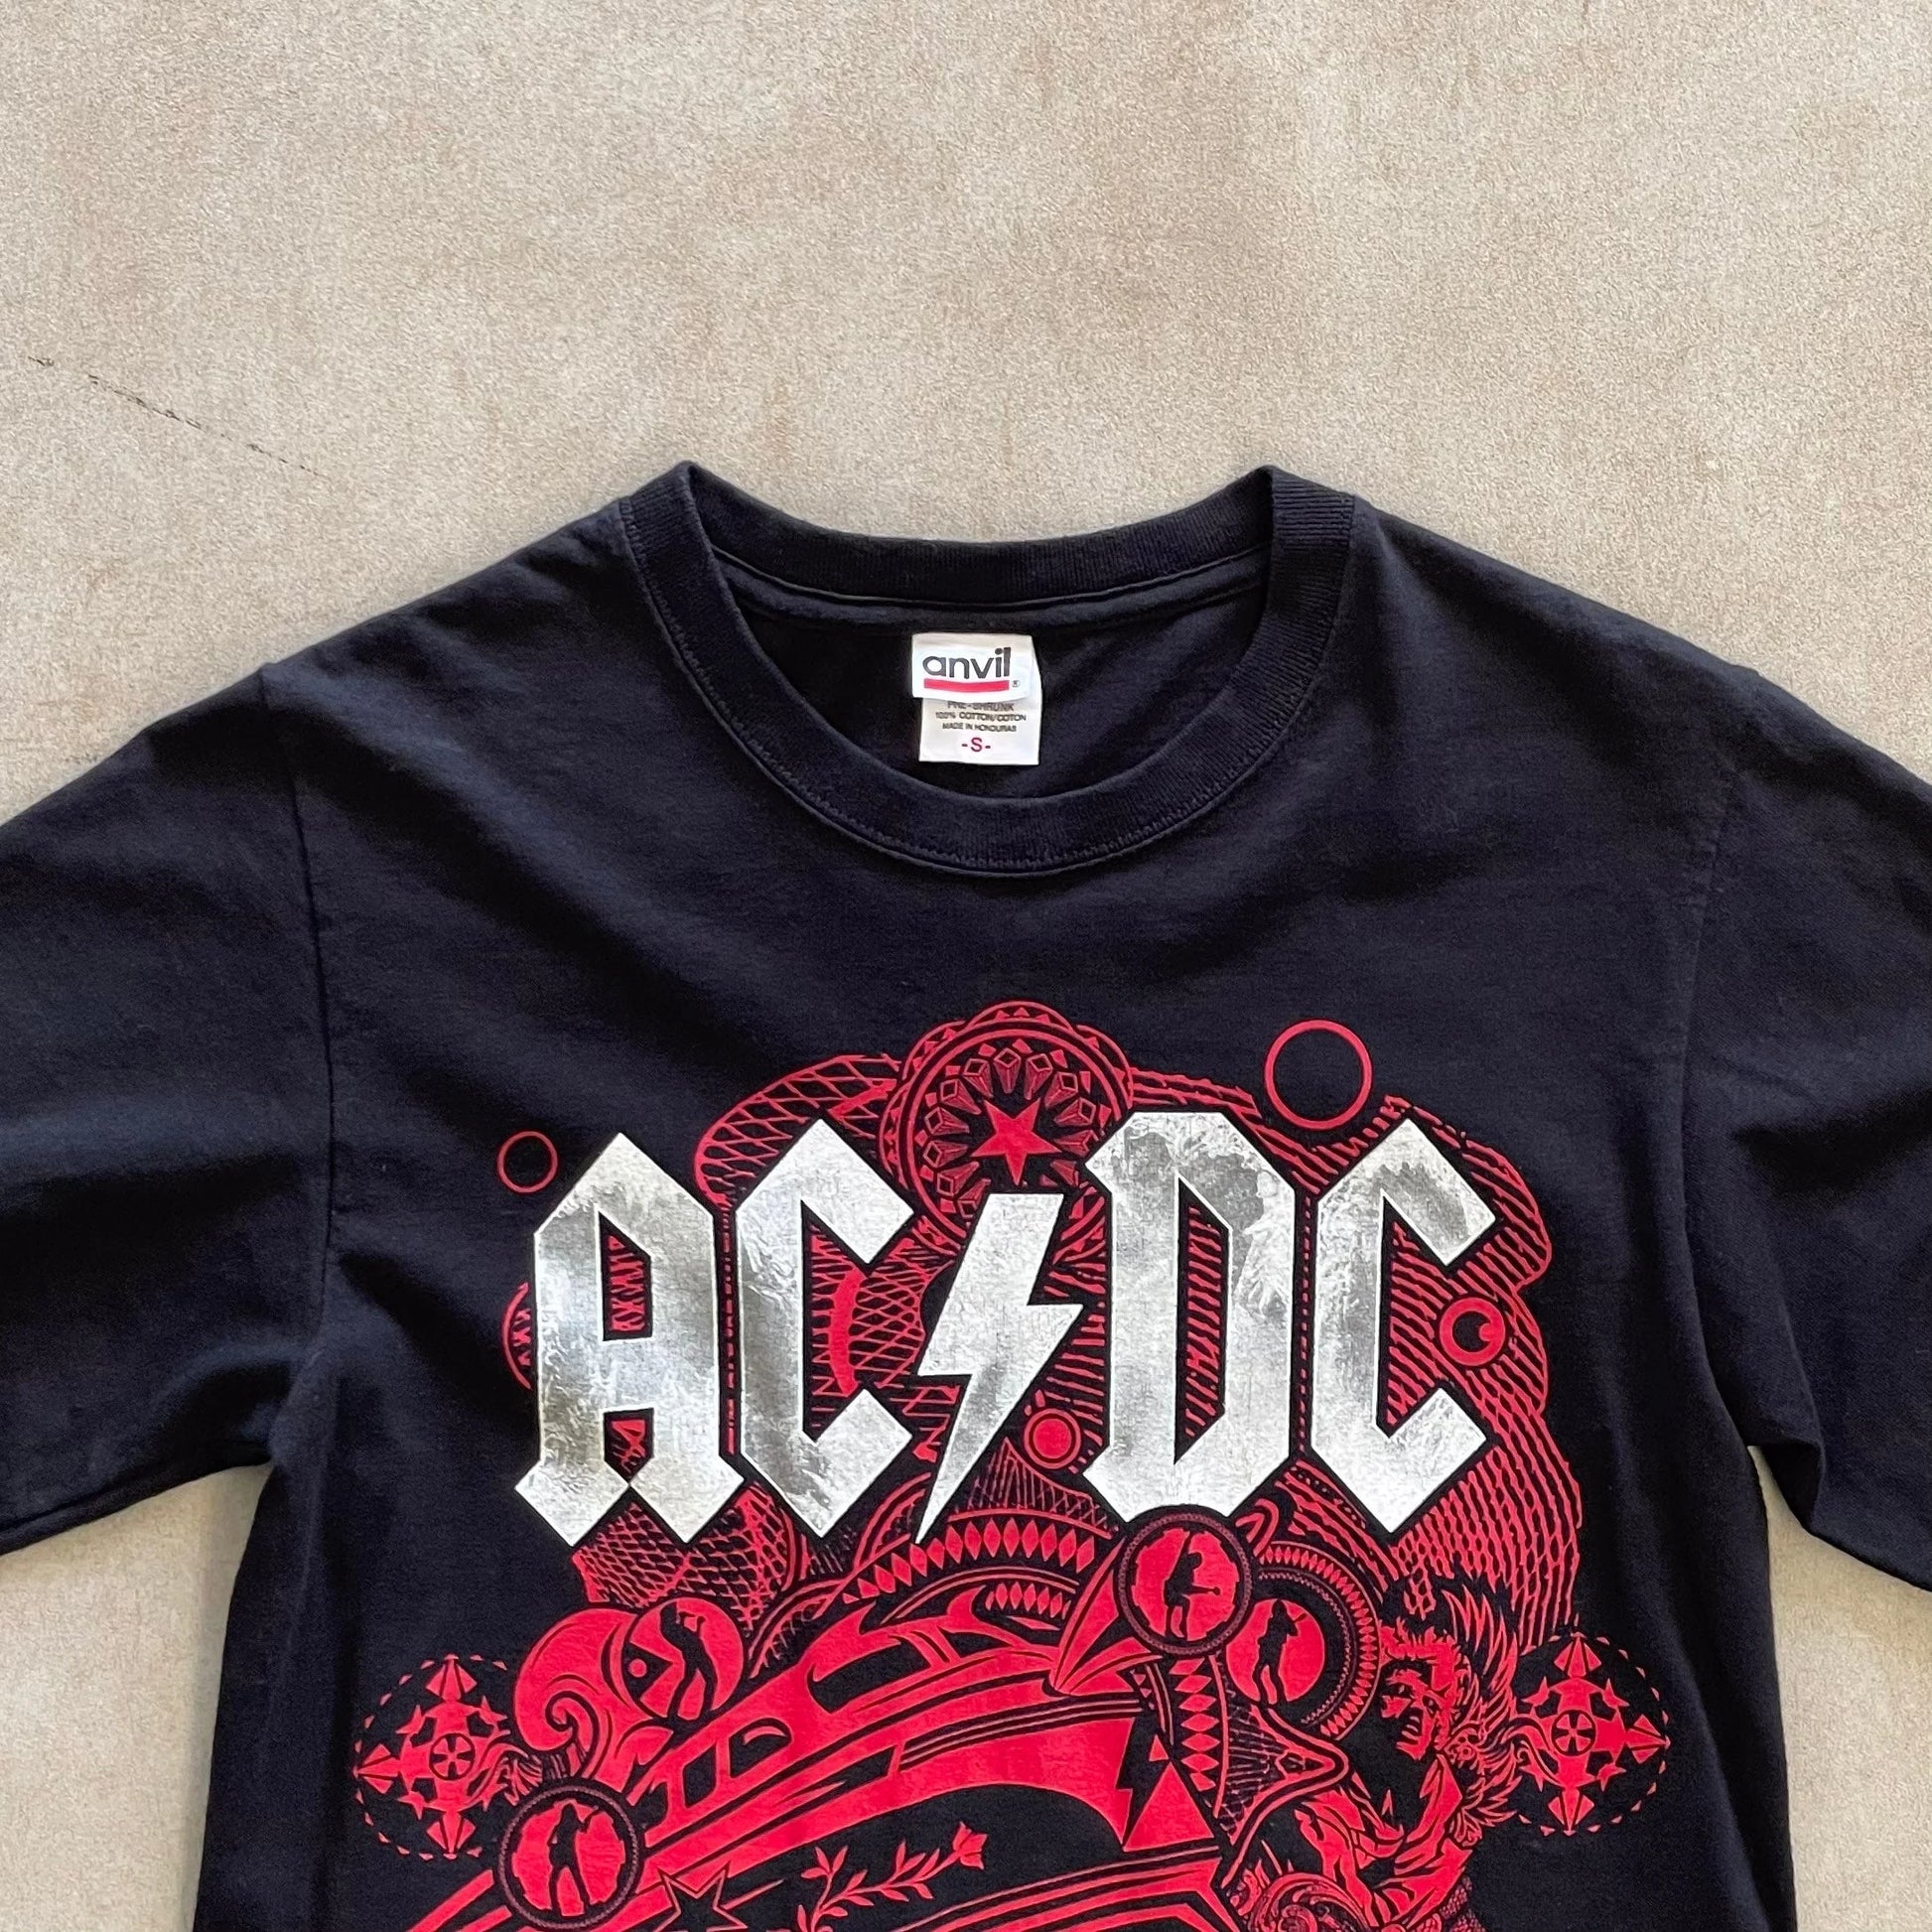 2009-AC-DC-Rock-N-Roll-Train-Tour-T-Shirt-S-sullivansvintage